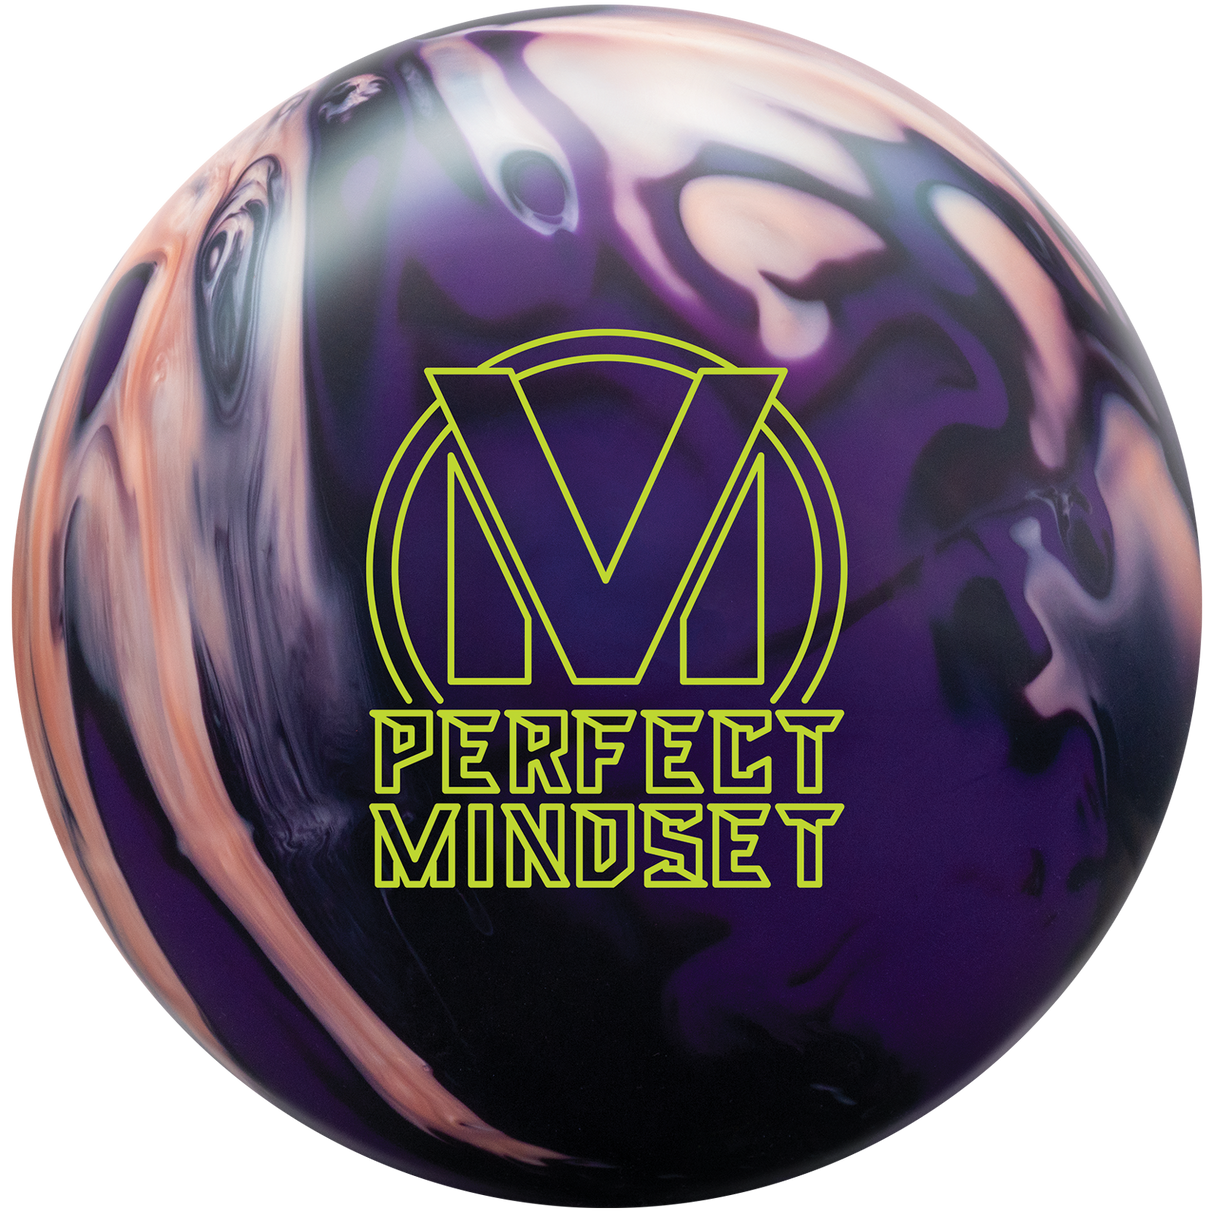 brunswick-perfect-mindset bowling ball insidebowling.com